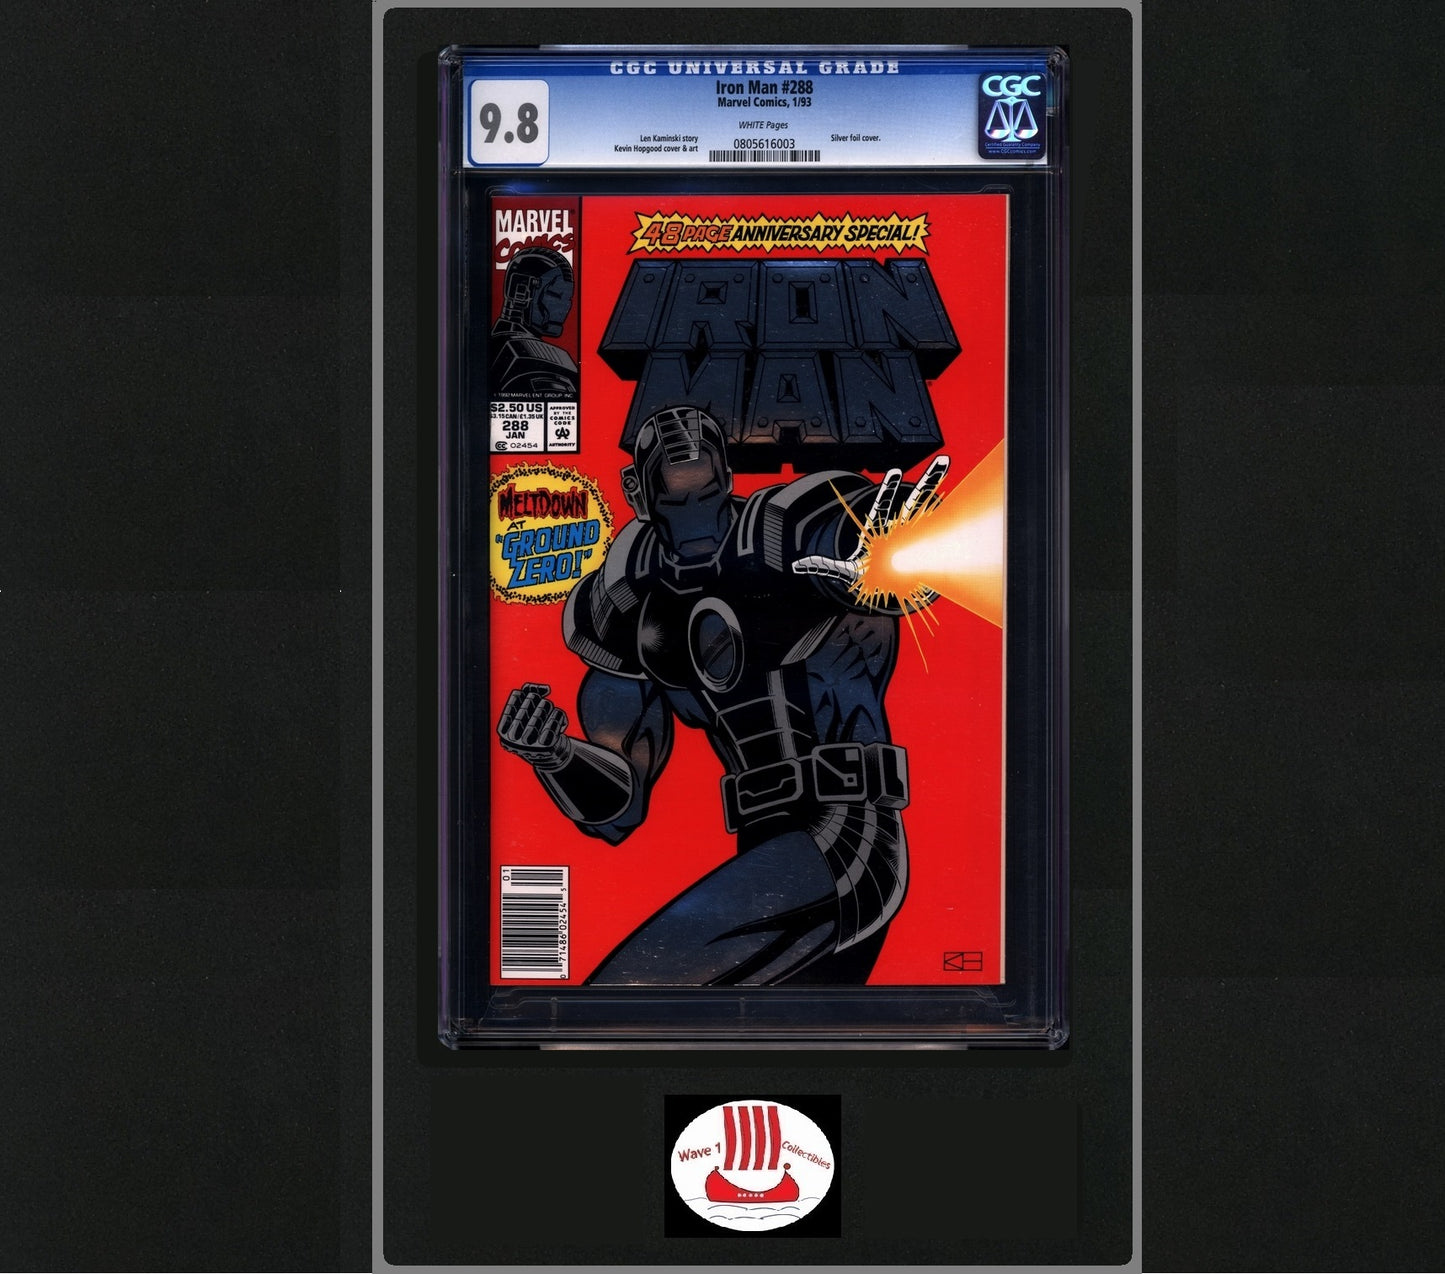 Iron Man vol 1 #288 Newsstand CGC 9.8 | Marvel Comics War Machine Foil Cover